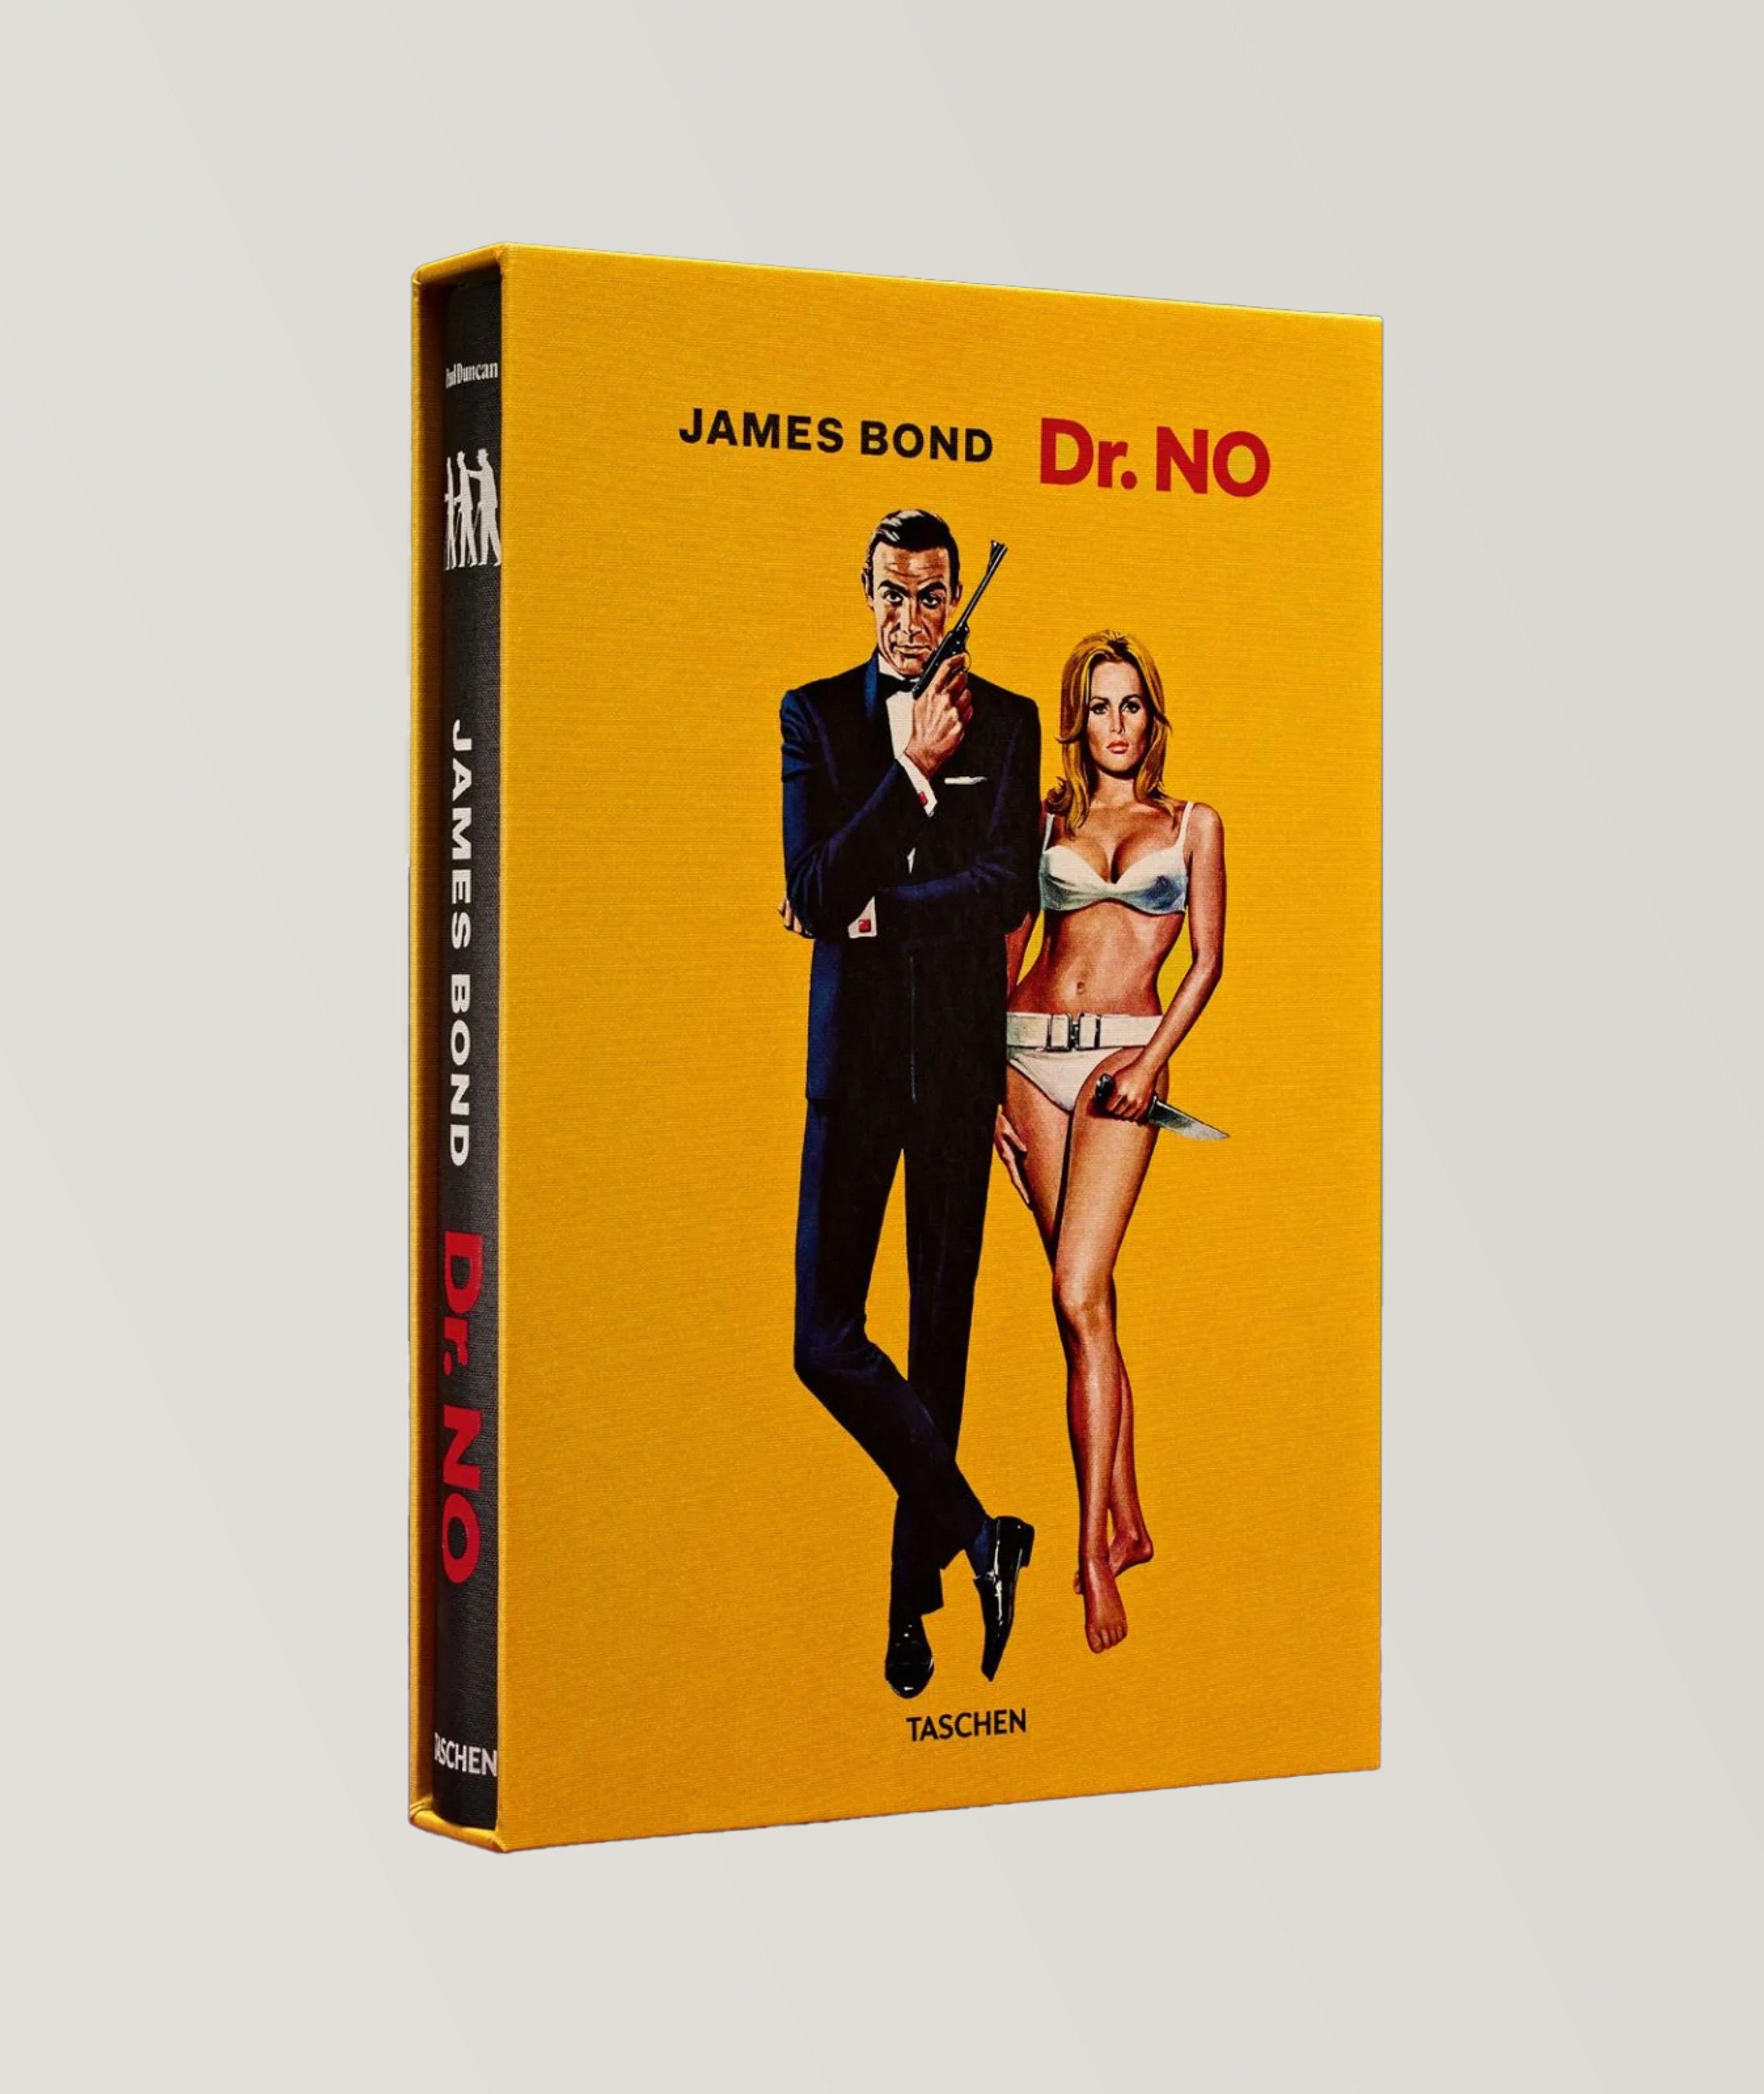 Livre « James Bond Dr. No », édition limitée image 0